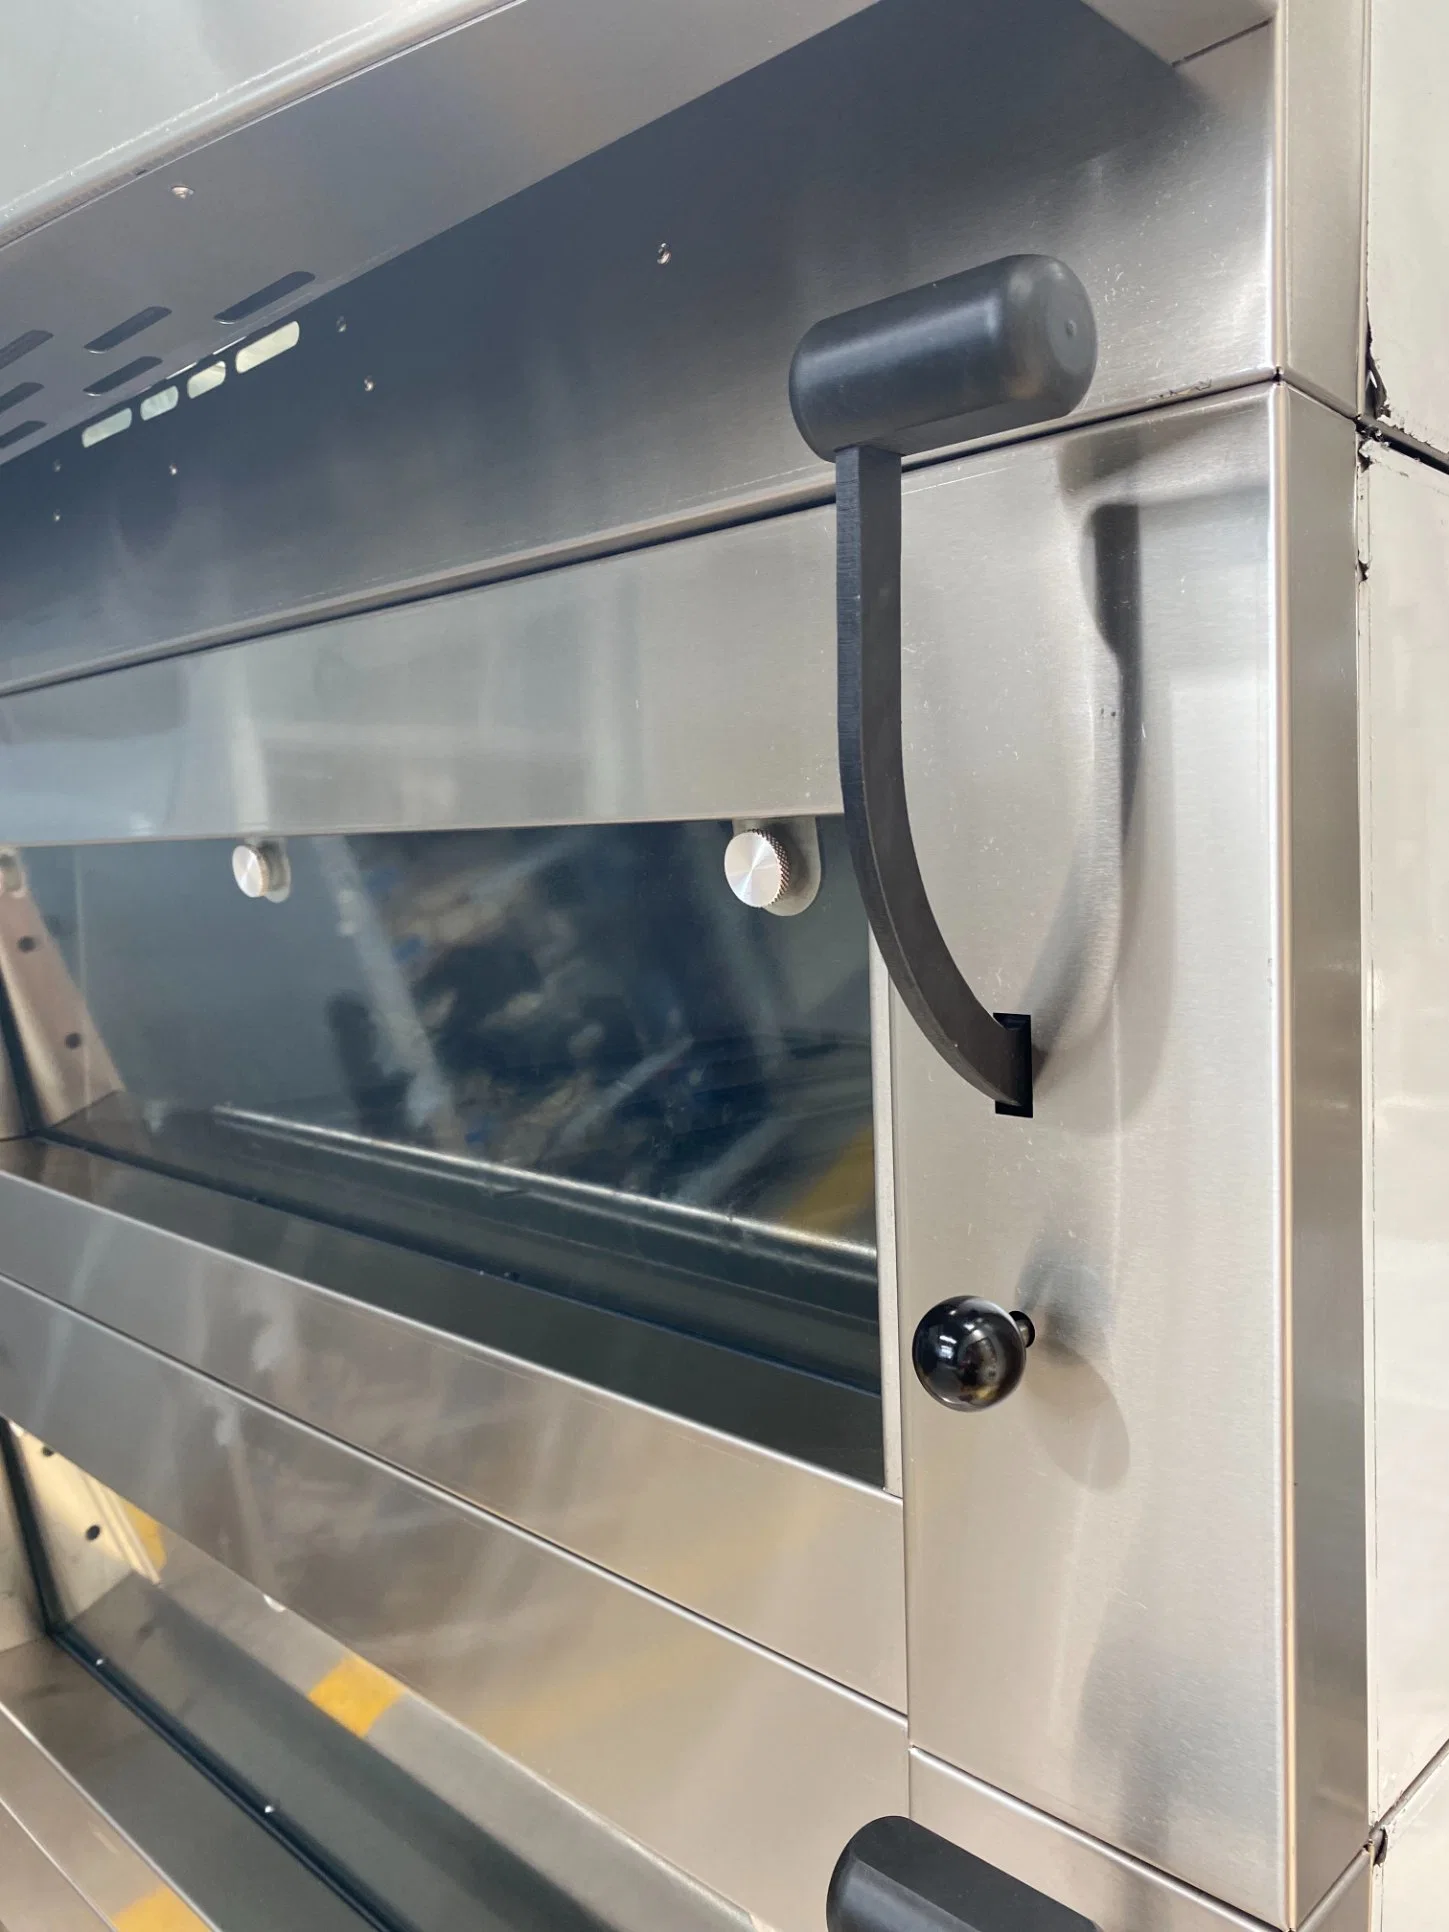 Comercial exce o Controle Digital Chef de Confeitaria vidro grandes equipamentos de cozedura no forno eléctrico da máquina de assar o equipamento de padaria equipamento de cozinha com pedra para pão um